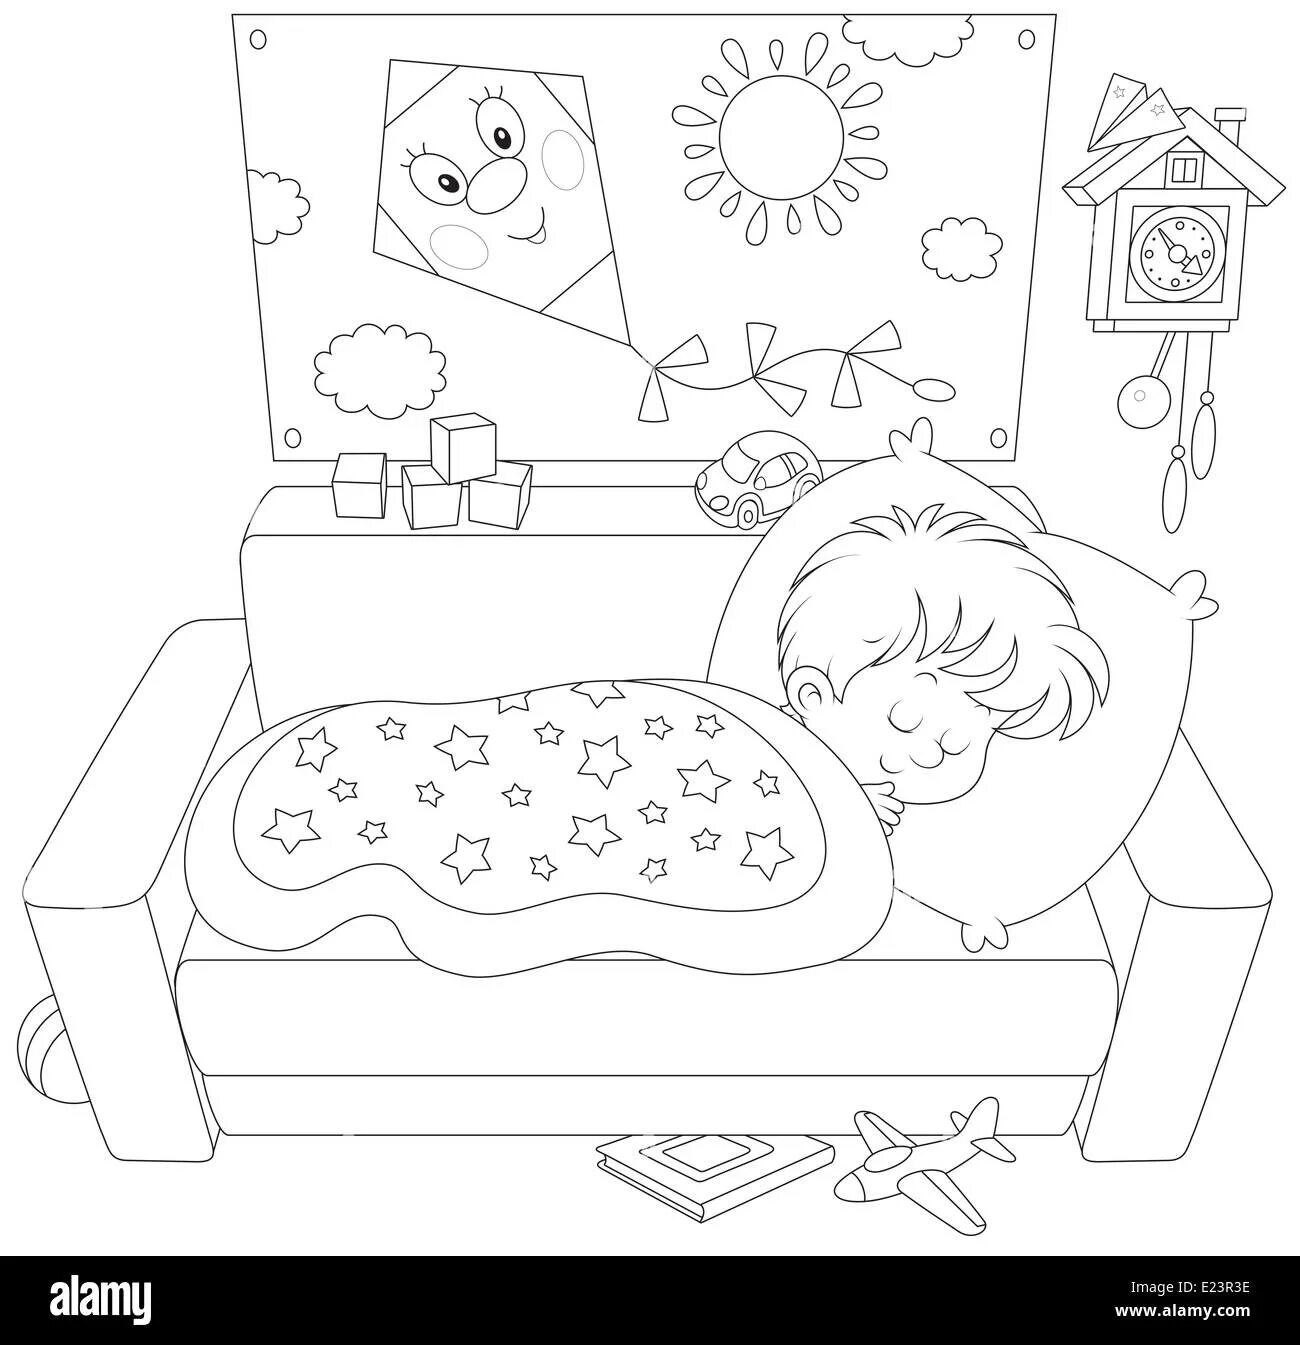 Набор иллюстраций спящего ребенка новорожденный спящий ребенок в линейной графике